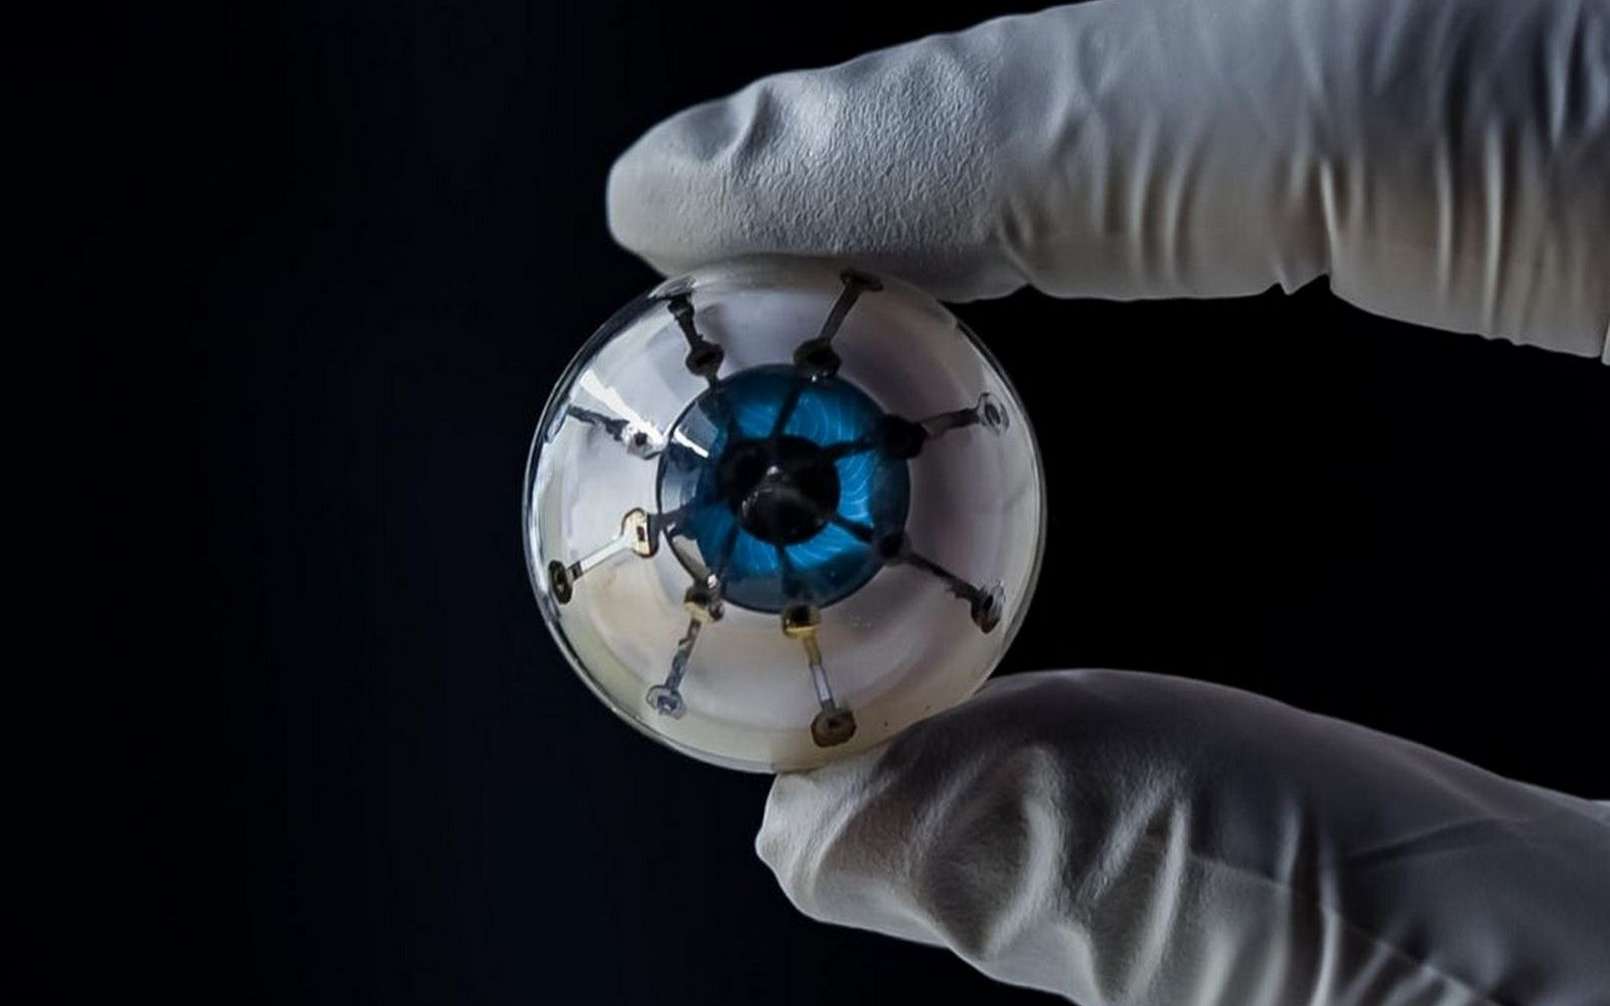 Le prototype d’œil bionique fabriqué par impression 3D. © University of Minnesota, McAlpine Group